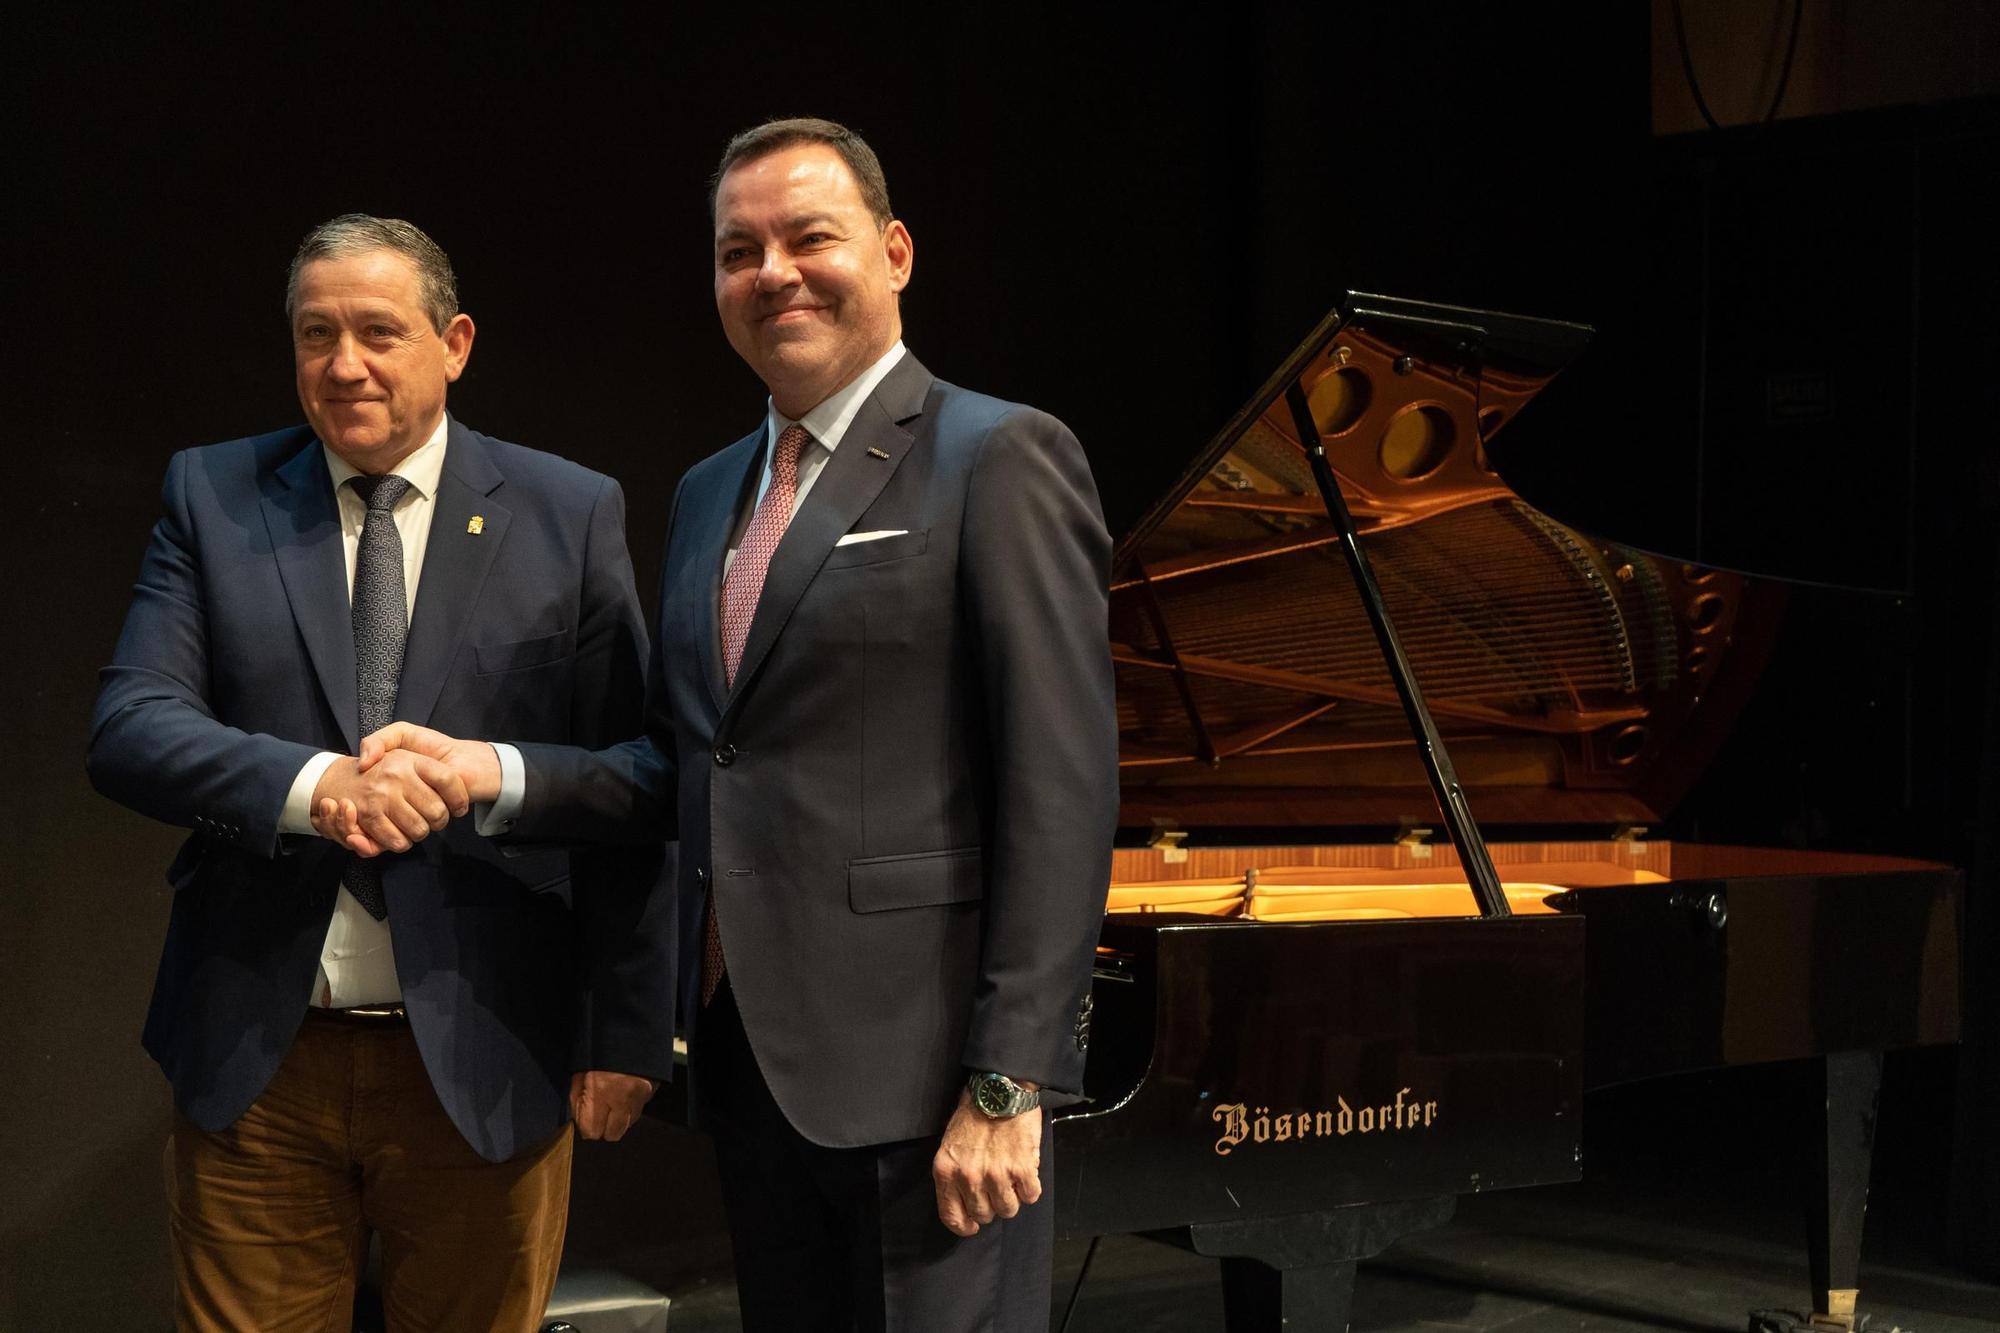 GALERÍA | Así es el nuevo piano que Fundos ha cedido al Ramos Carrión de Zamora